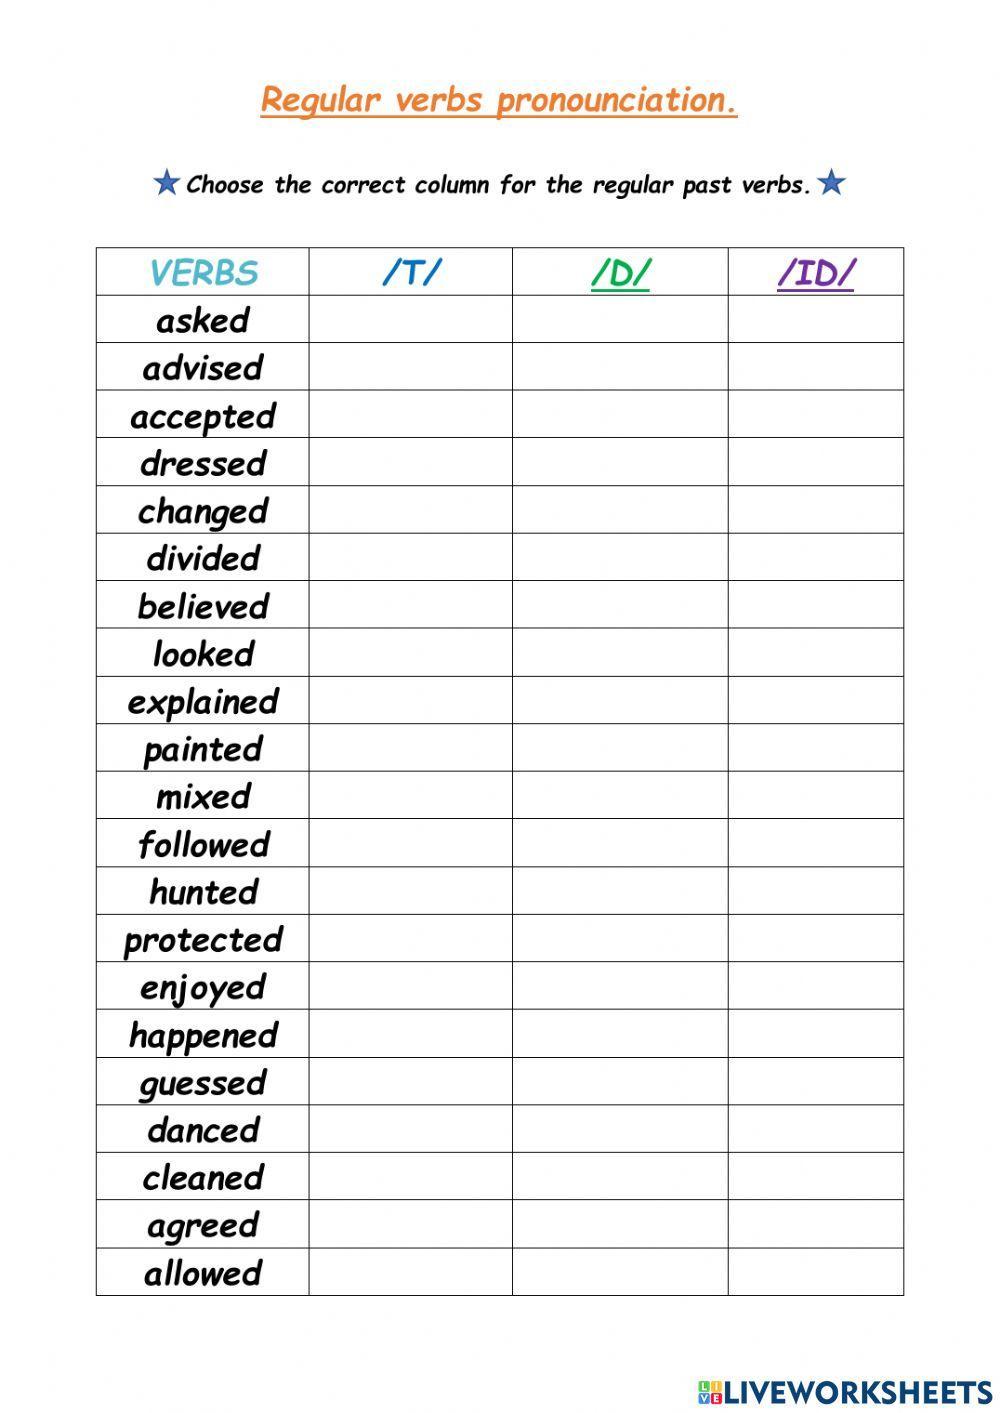 Regular verbs pronunciation